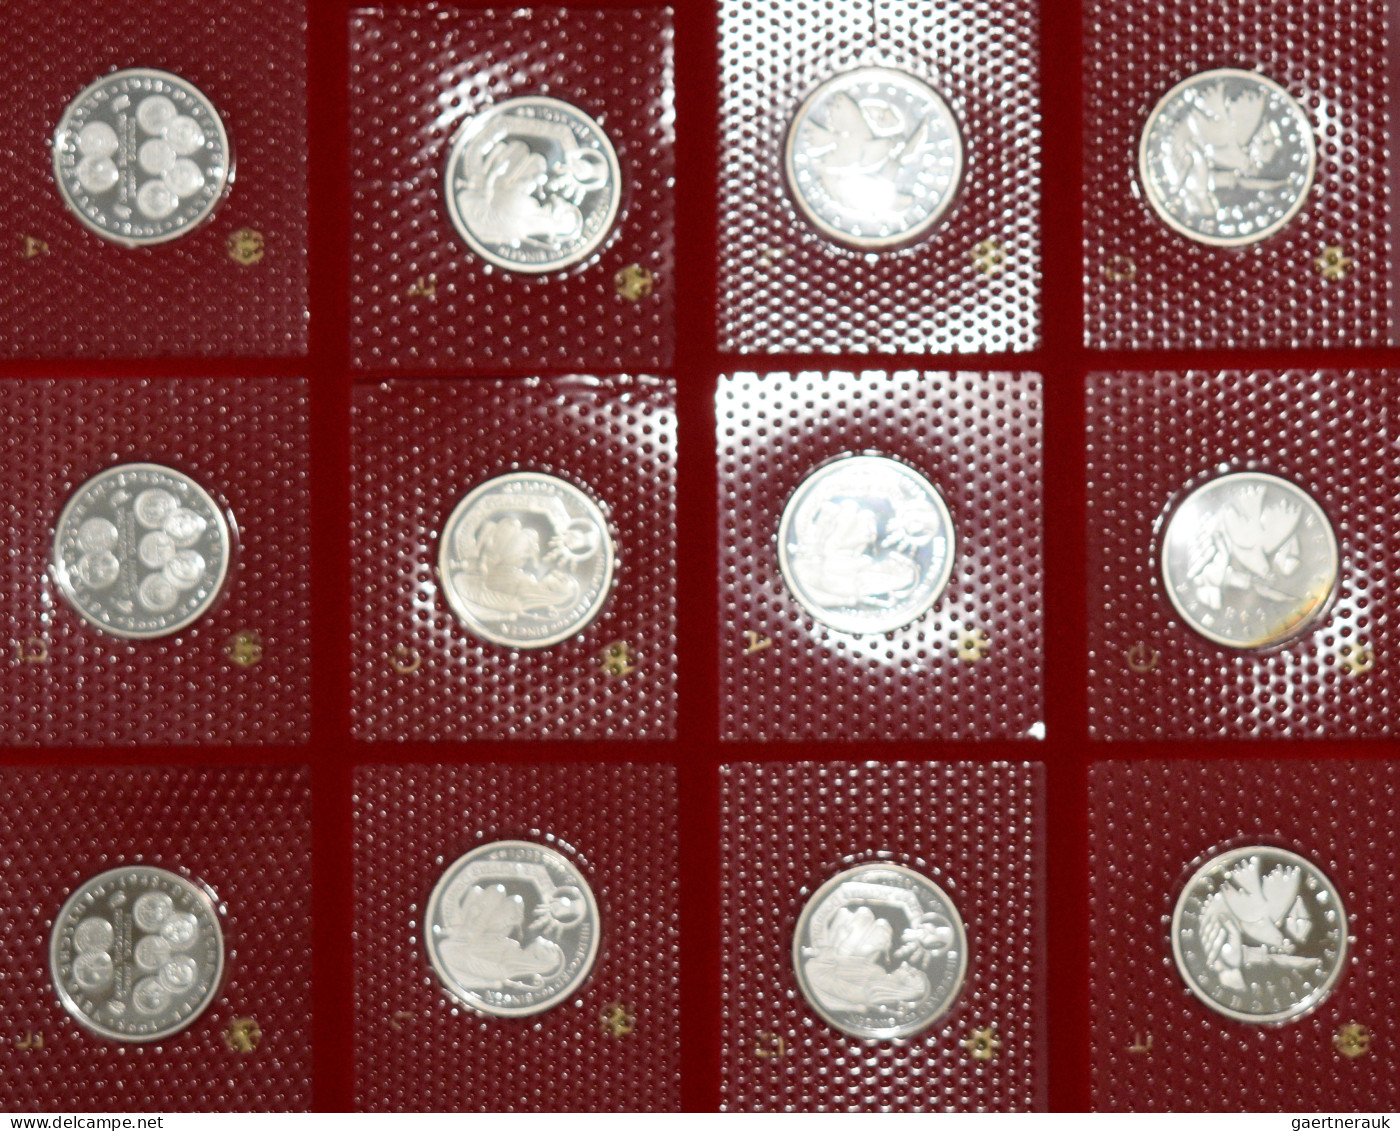 Bundesrepublik Deutschland 1948-2001: 10 DM pp Münzen: Auf 21 Lindnerboxen und e